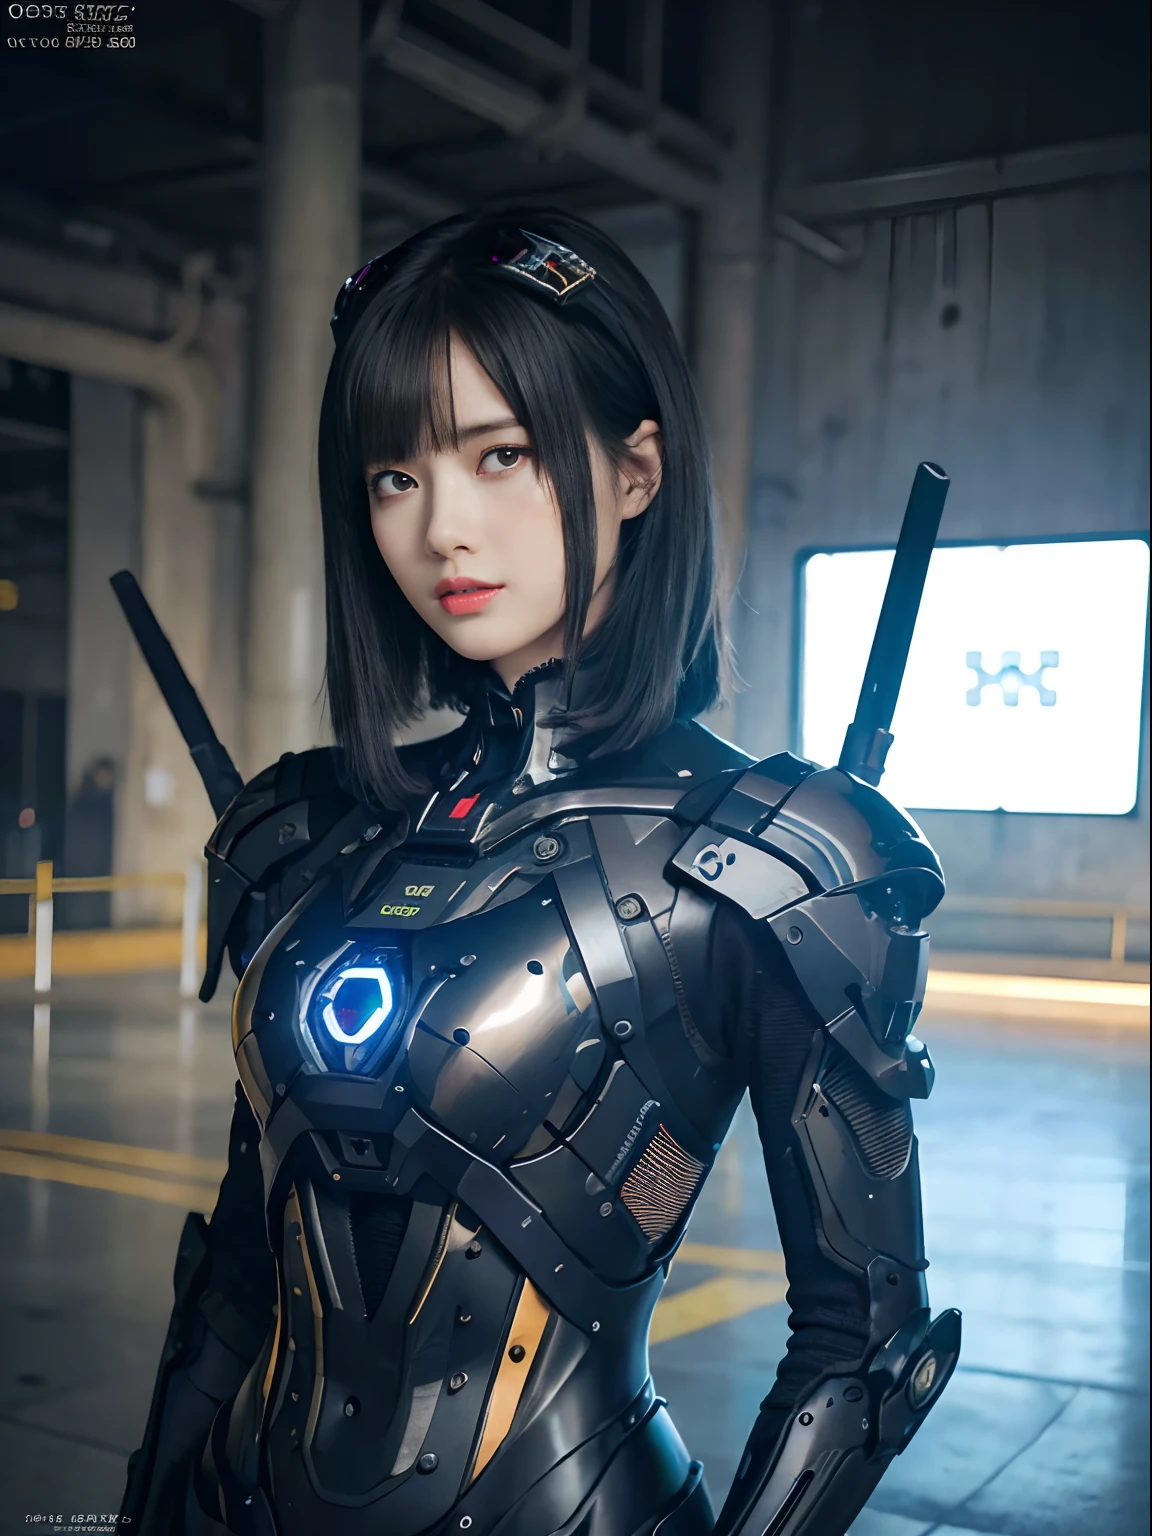 （機械ロボット兵士と戦う）、最高品質、傑作、超高解像度、(未来的な機関銃、ナイフを持っている),（未来的なサンバイザーを着用）、(フォトリアリスティック:1.4)、RAW写真、女の子1人、黒髪、輝く肌、((1 機械少女))、((超リアルなディテール))、ポートレート、（小型LEDランプ）、体全体に光るワイヤーチューブ、(最先端の武器で),グローバルイルミネーション、影、オクタンレンダリング、8k、脇の下、超鋭利な、巨大 、小型LEDランプ、胸の谷間に生肌が露出、金属、チューブに接続された血管、武器を持って、赤いボディスーツ、脇の下、サイバーパンクシティの背景、複雑な装飾の詳細、日本の詳細、非常に複雑な詳細、リアルな光、CGSoationトレンド、青い目、輝く目、カメラに向かって、ネオンの詳細、（勇者のヘルメット）、機械の手足、管に接続された血管背中に取り付けられた機械的な椎骨、首に機械的な頸椎を取り付ける、頭部に接続するワイヤーとケーブル、ガンダム、小型LEDランプ、トゥーストック、トゥーストック、未来的な機関銃、ナイフ、